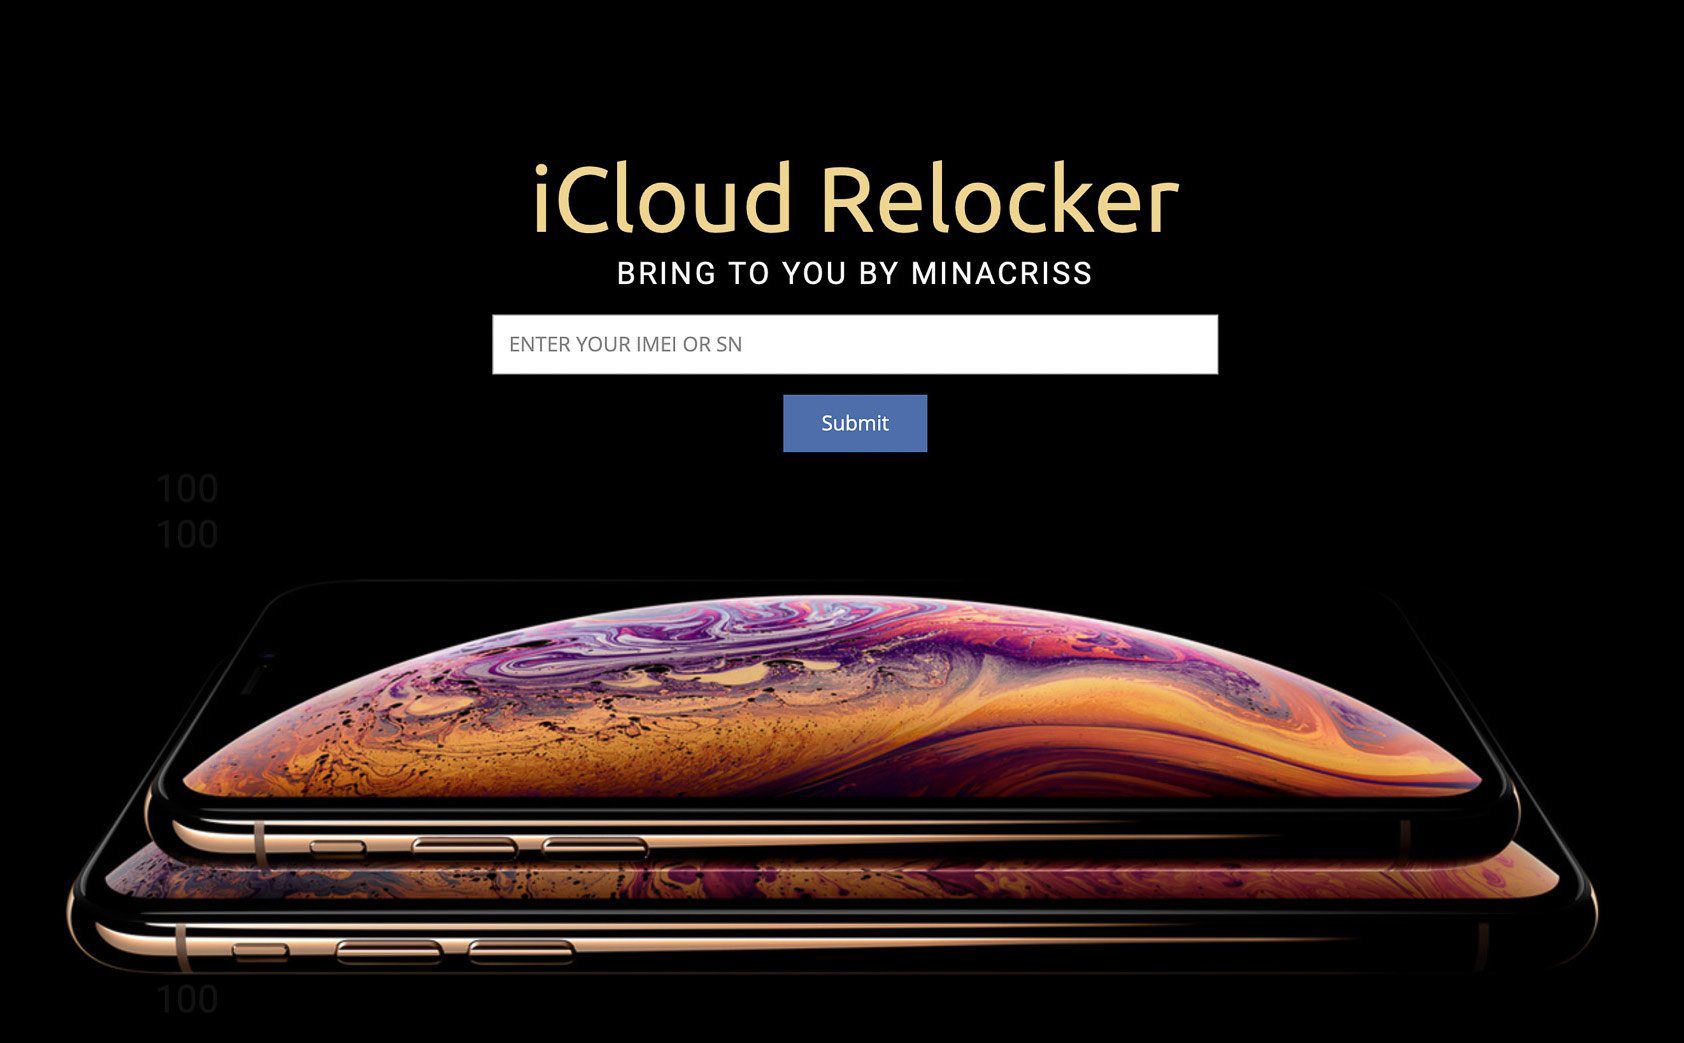 Apple chính thức hỗ trợ Unlock iClould cho máy bị "RELOCK từ xa"